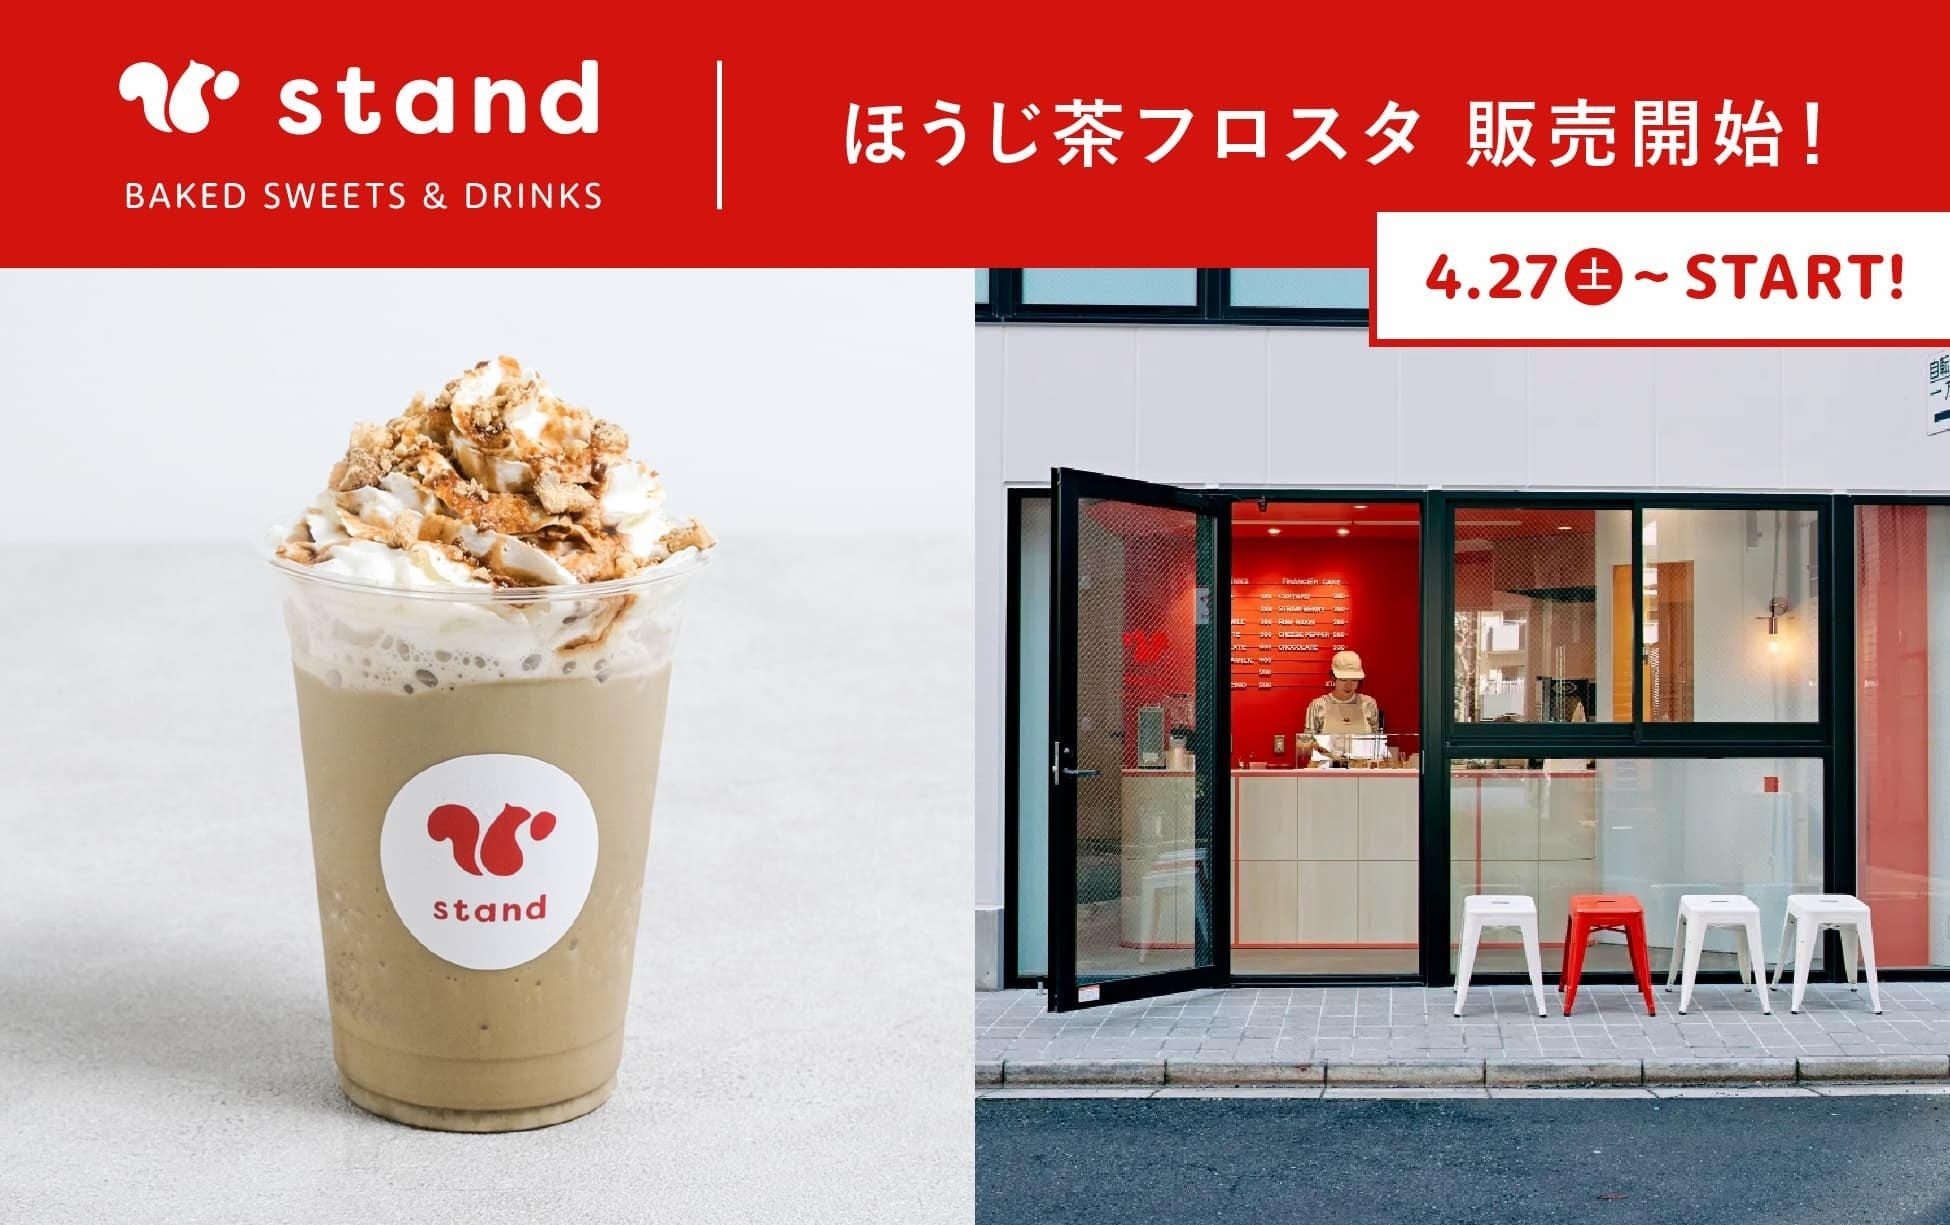 東京・蔵前のできたておやつの専門店「スナックミースタンド」で、すっきりとした味わいで夏にぴったりのオリジナルドリンク「ほうじ茶フロスタ」を4月27日(土)より販売開始